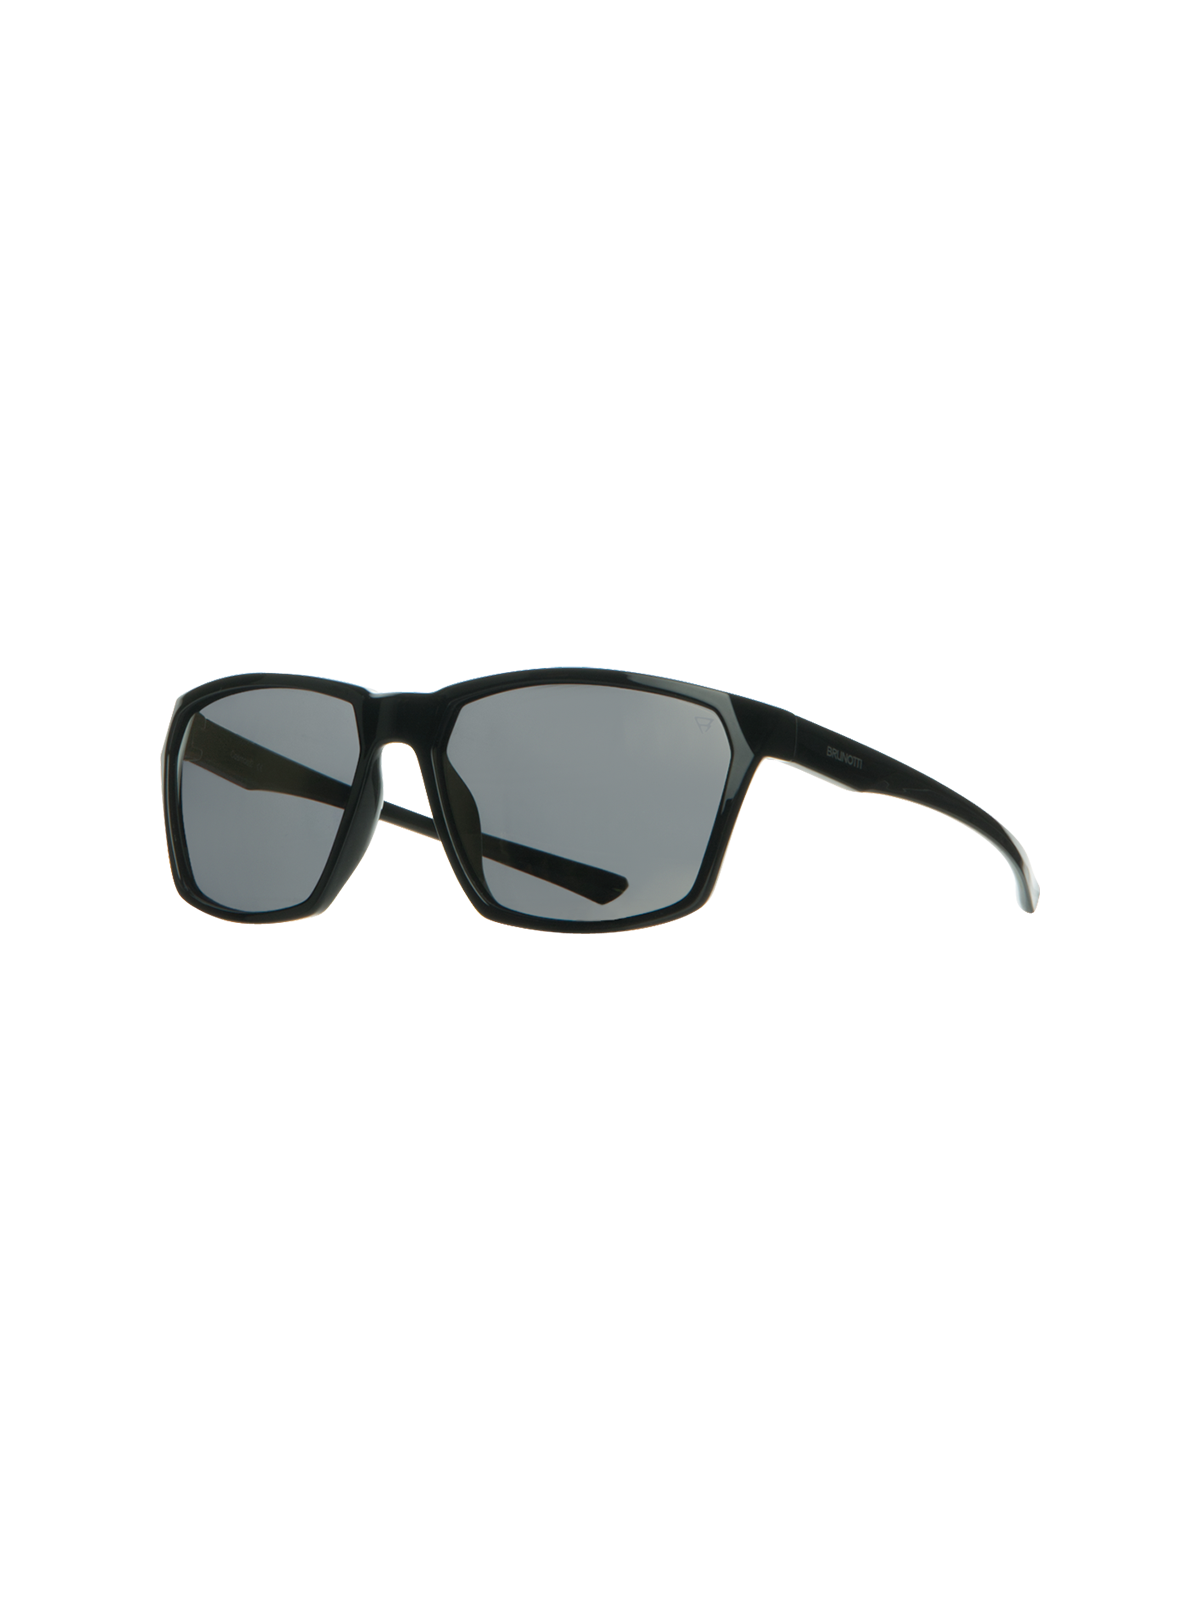 Cosmos Unisex Sunglasses | Black